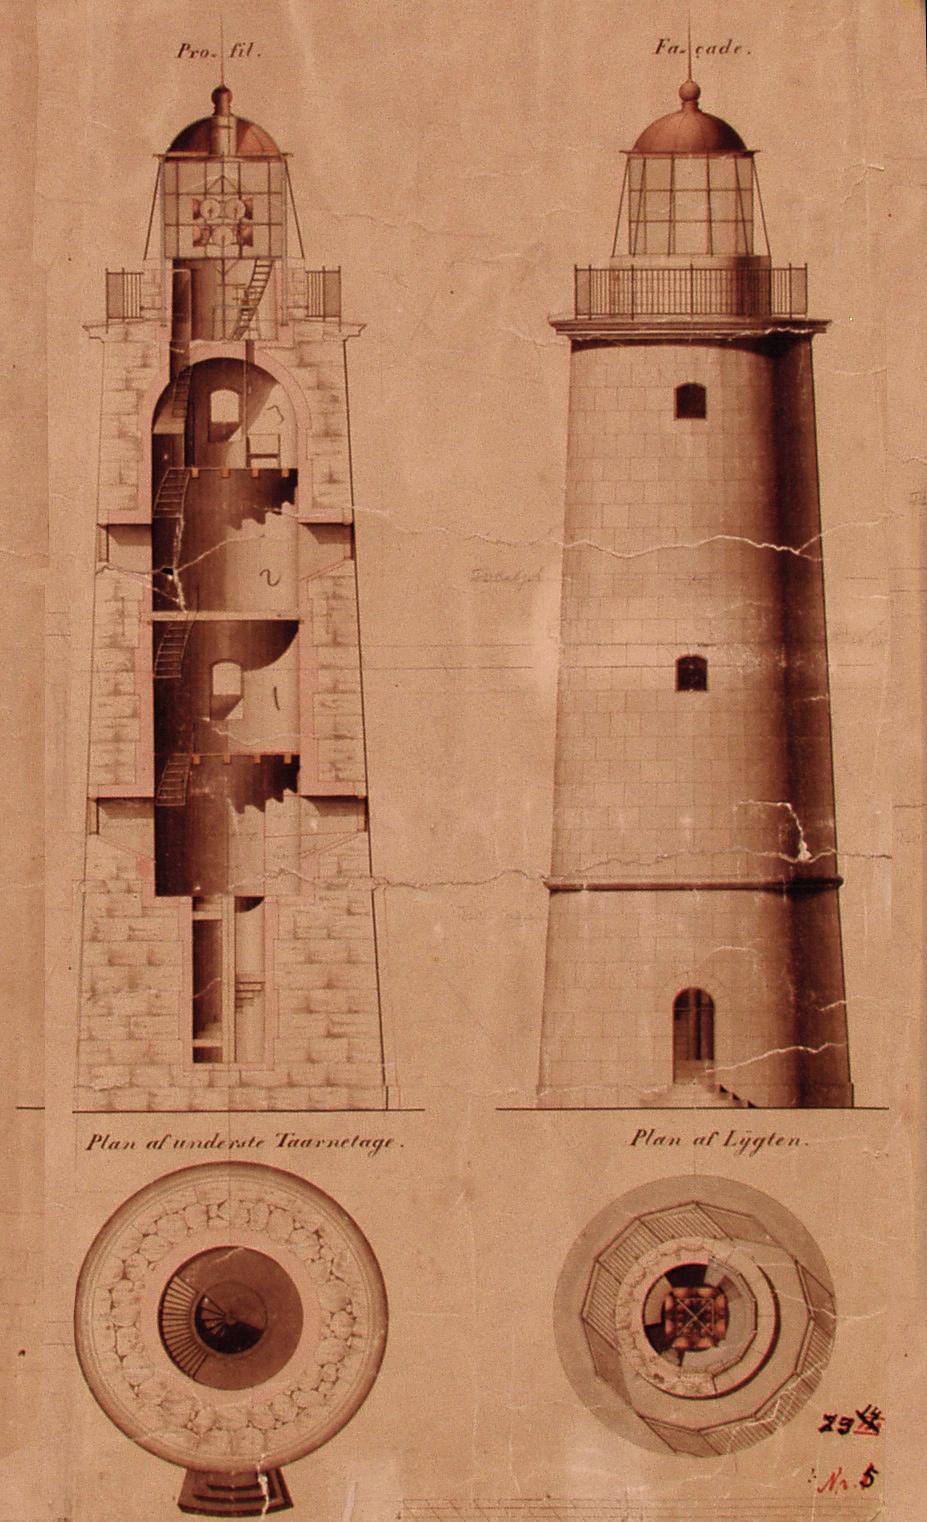 Gammel tegning av fyrtårnet, opprinnelig høyde.